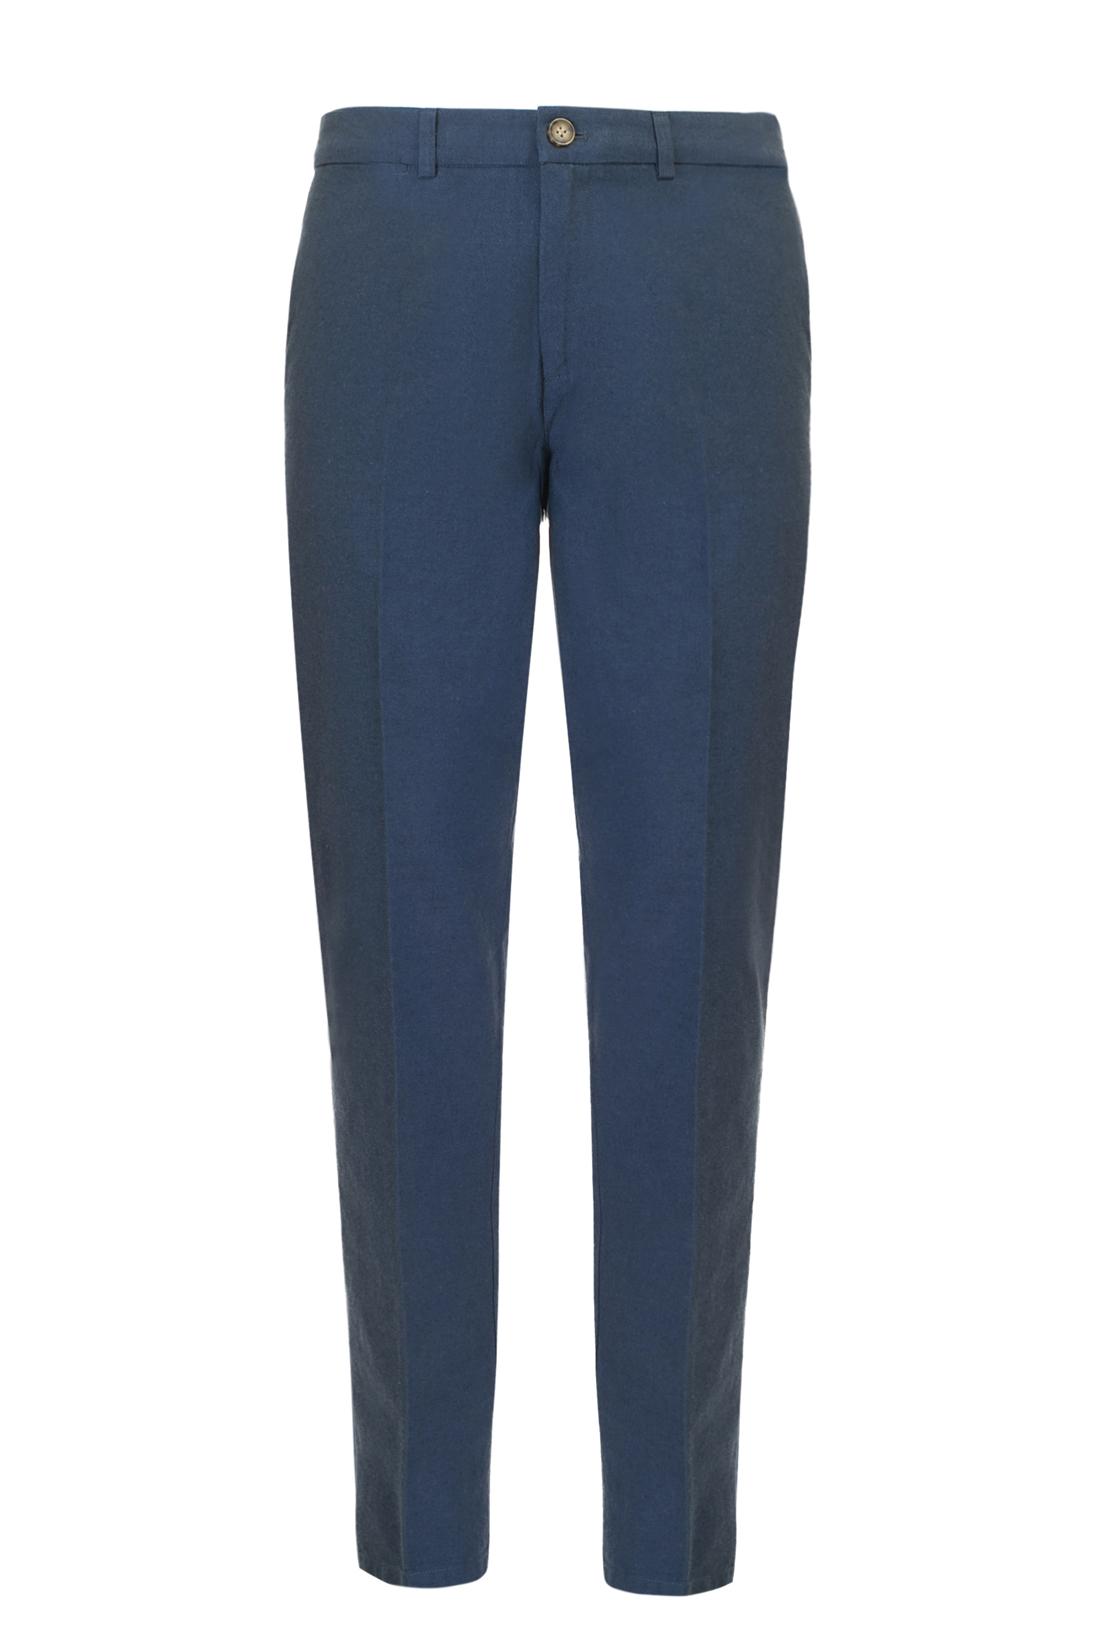 Хлопковые брюки (арт. baon B797008), размер XL, цвет синий Хлопковые брюки (арт. baon B797008) - фото 4